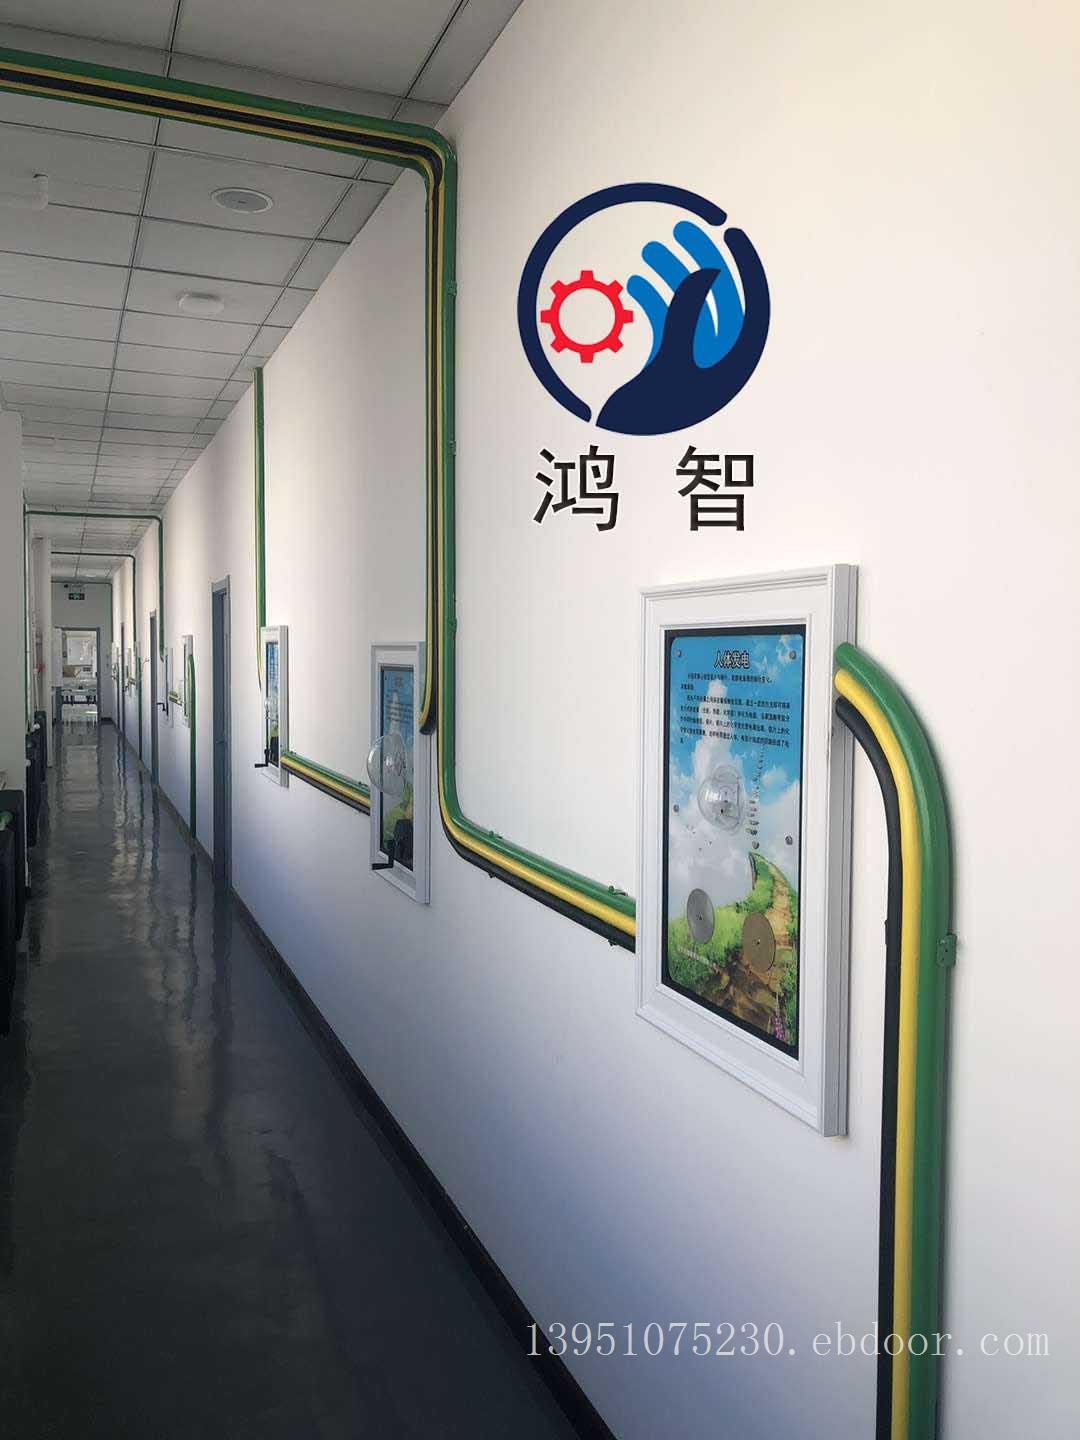 握力测试普科技科学智慧墙展品壁挂式走廊科技馆仪器